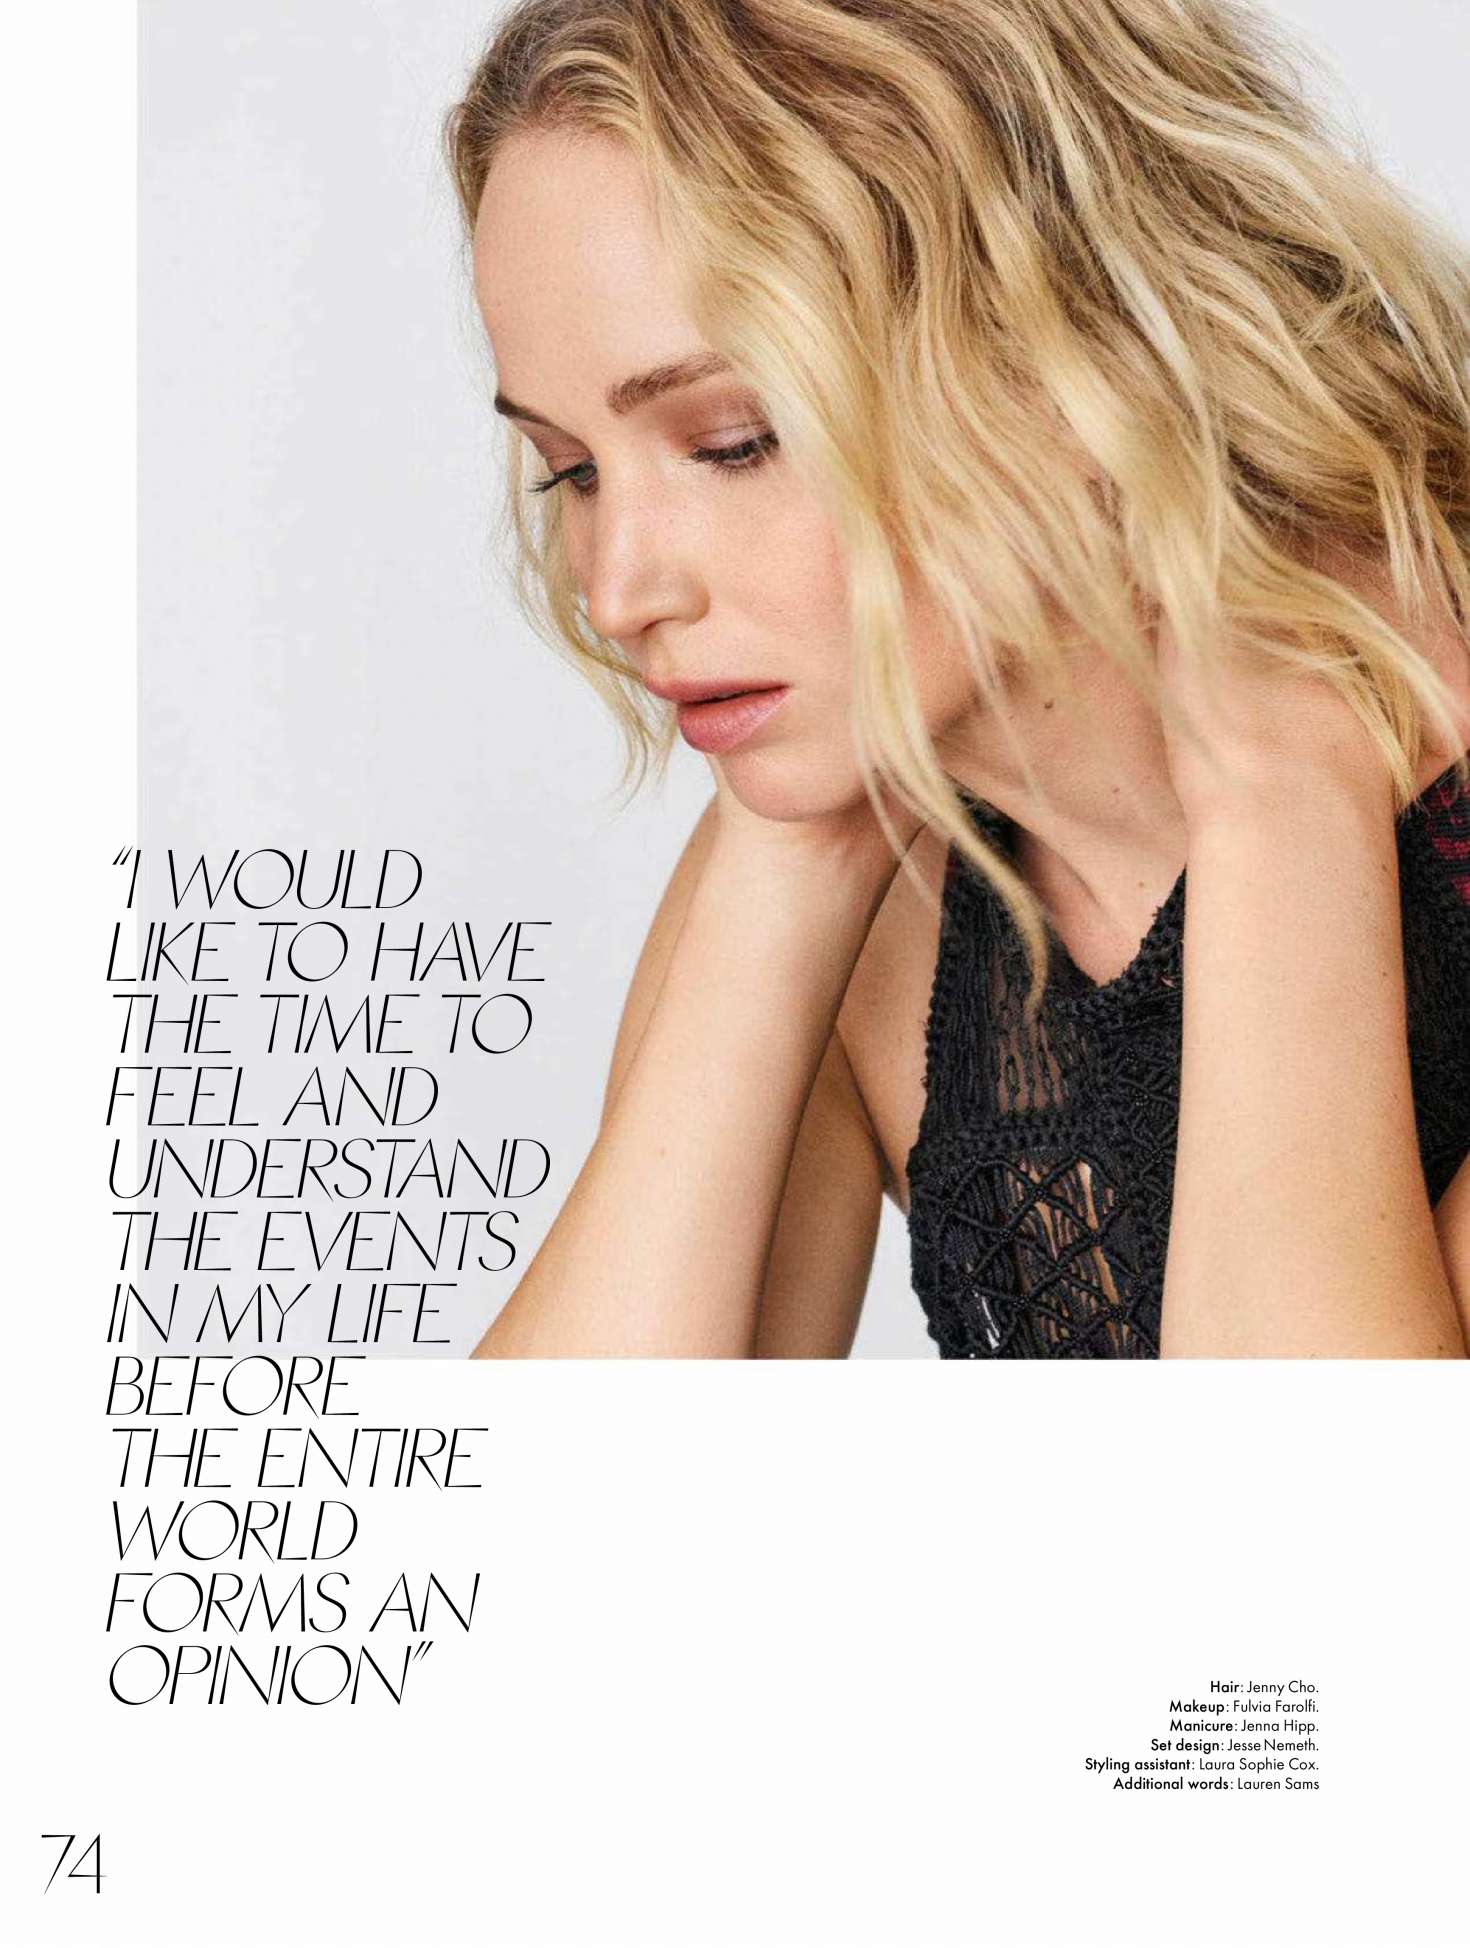 Jennifer Lawrence for Elle Australia Magazine (October 2018)